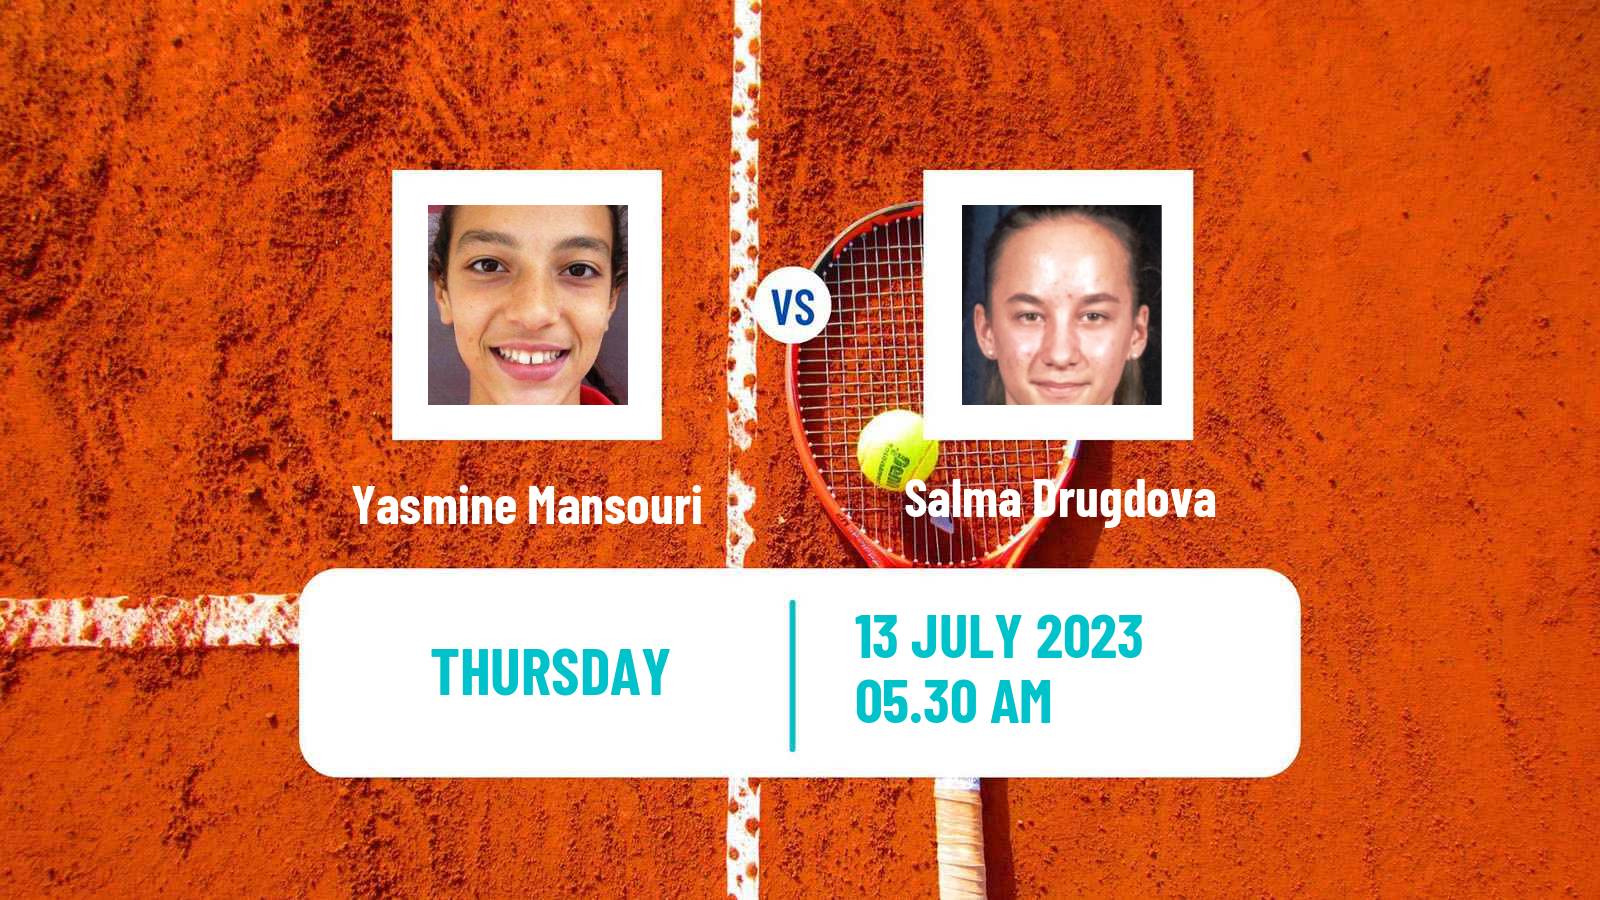 Tennis ITF W15 Monastir 23 Women Yasmine Mansouri - Salma Drugdova